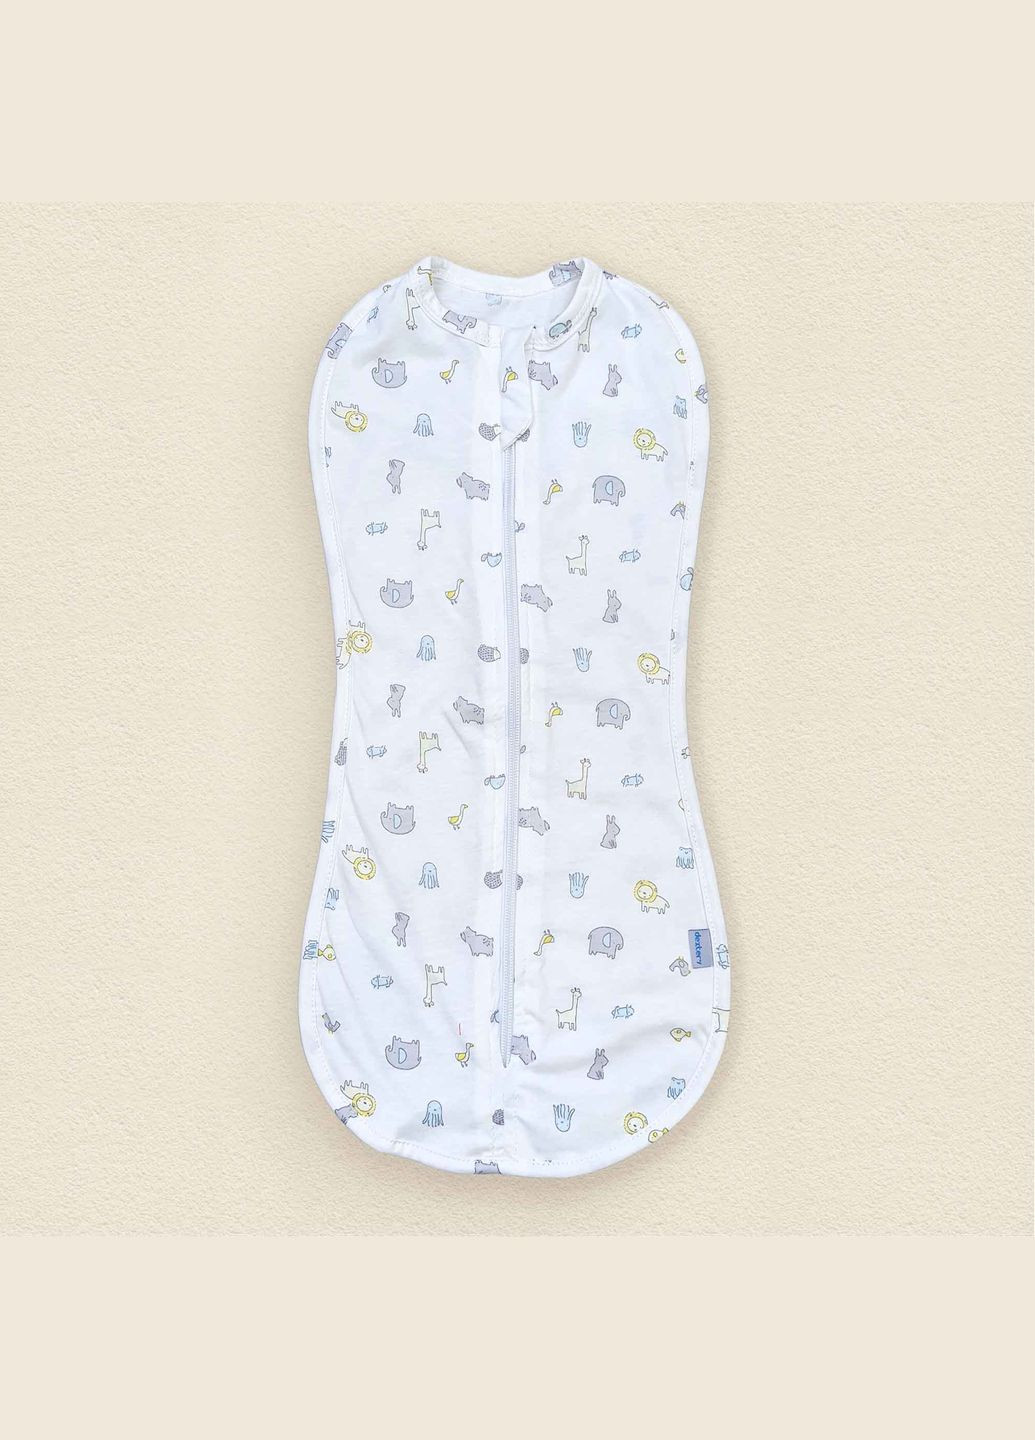 Евро-пеленка для новорожденных кулир на молнии Dexter`s animals белый dexter's (292012795)